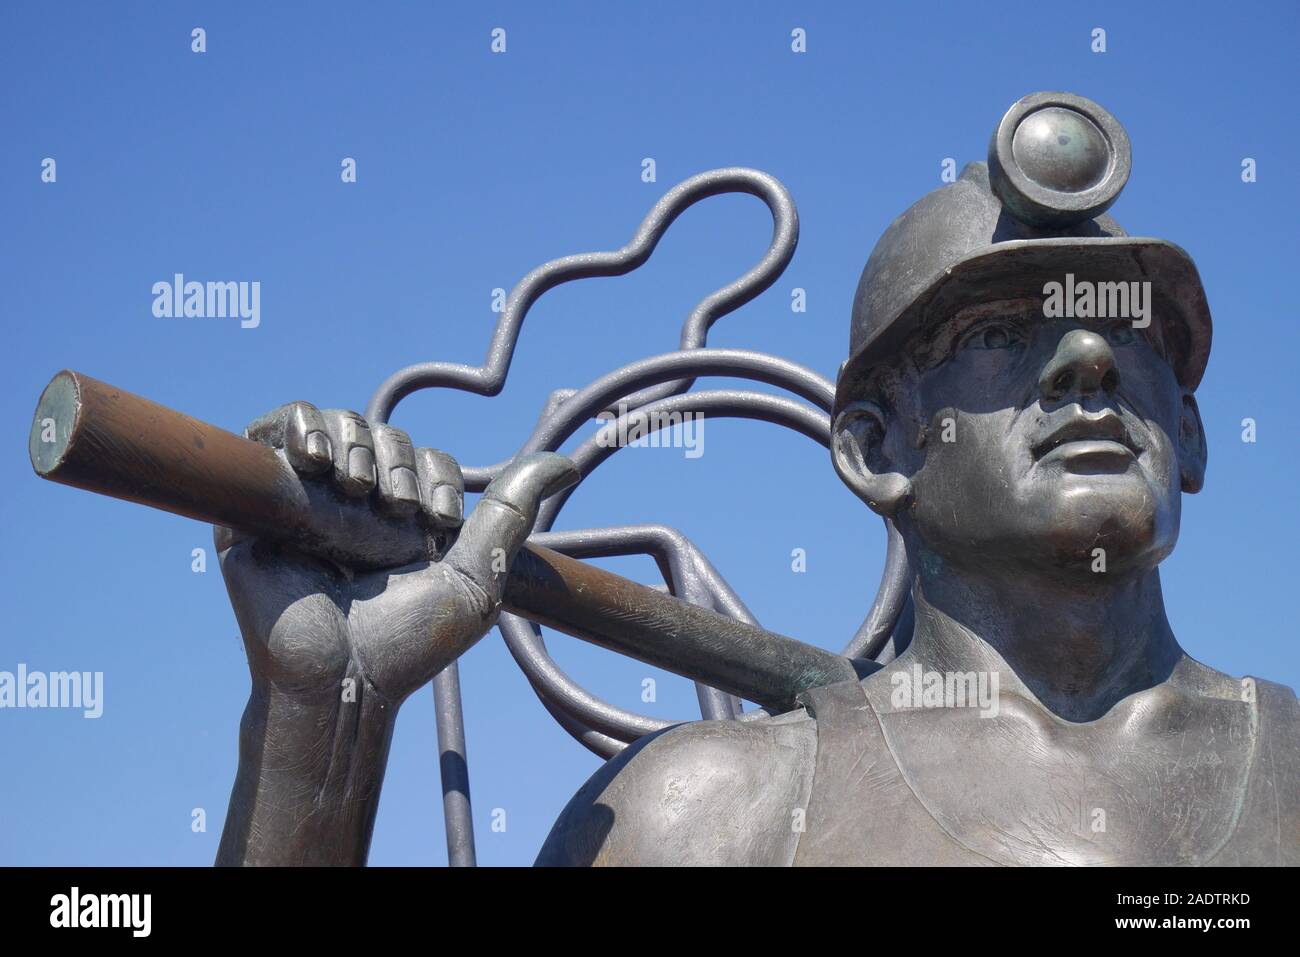 Depuis la fosse au Port, statue en bronze d'un mineur de charbon, par John Clinch, la baie de Cardiff, Cardiff, Pays de Galles, Royaume-Uni Banque D'Images